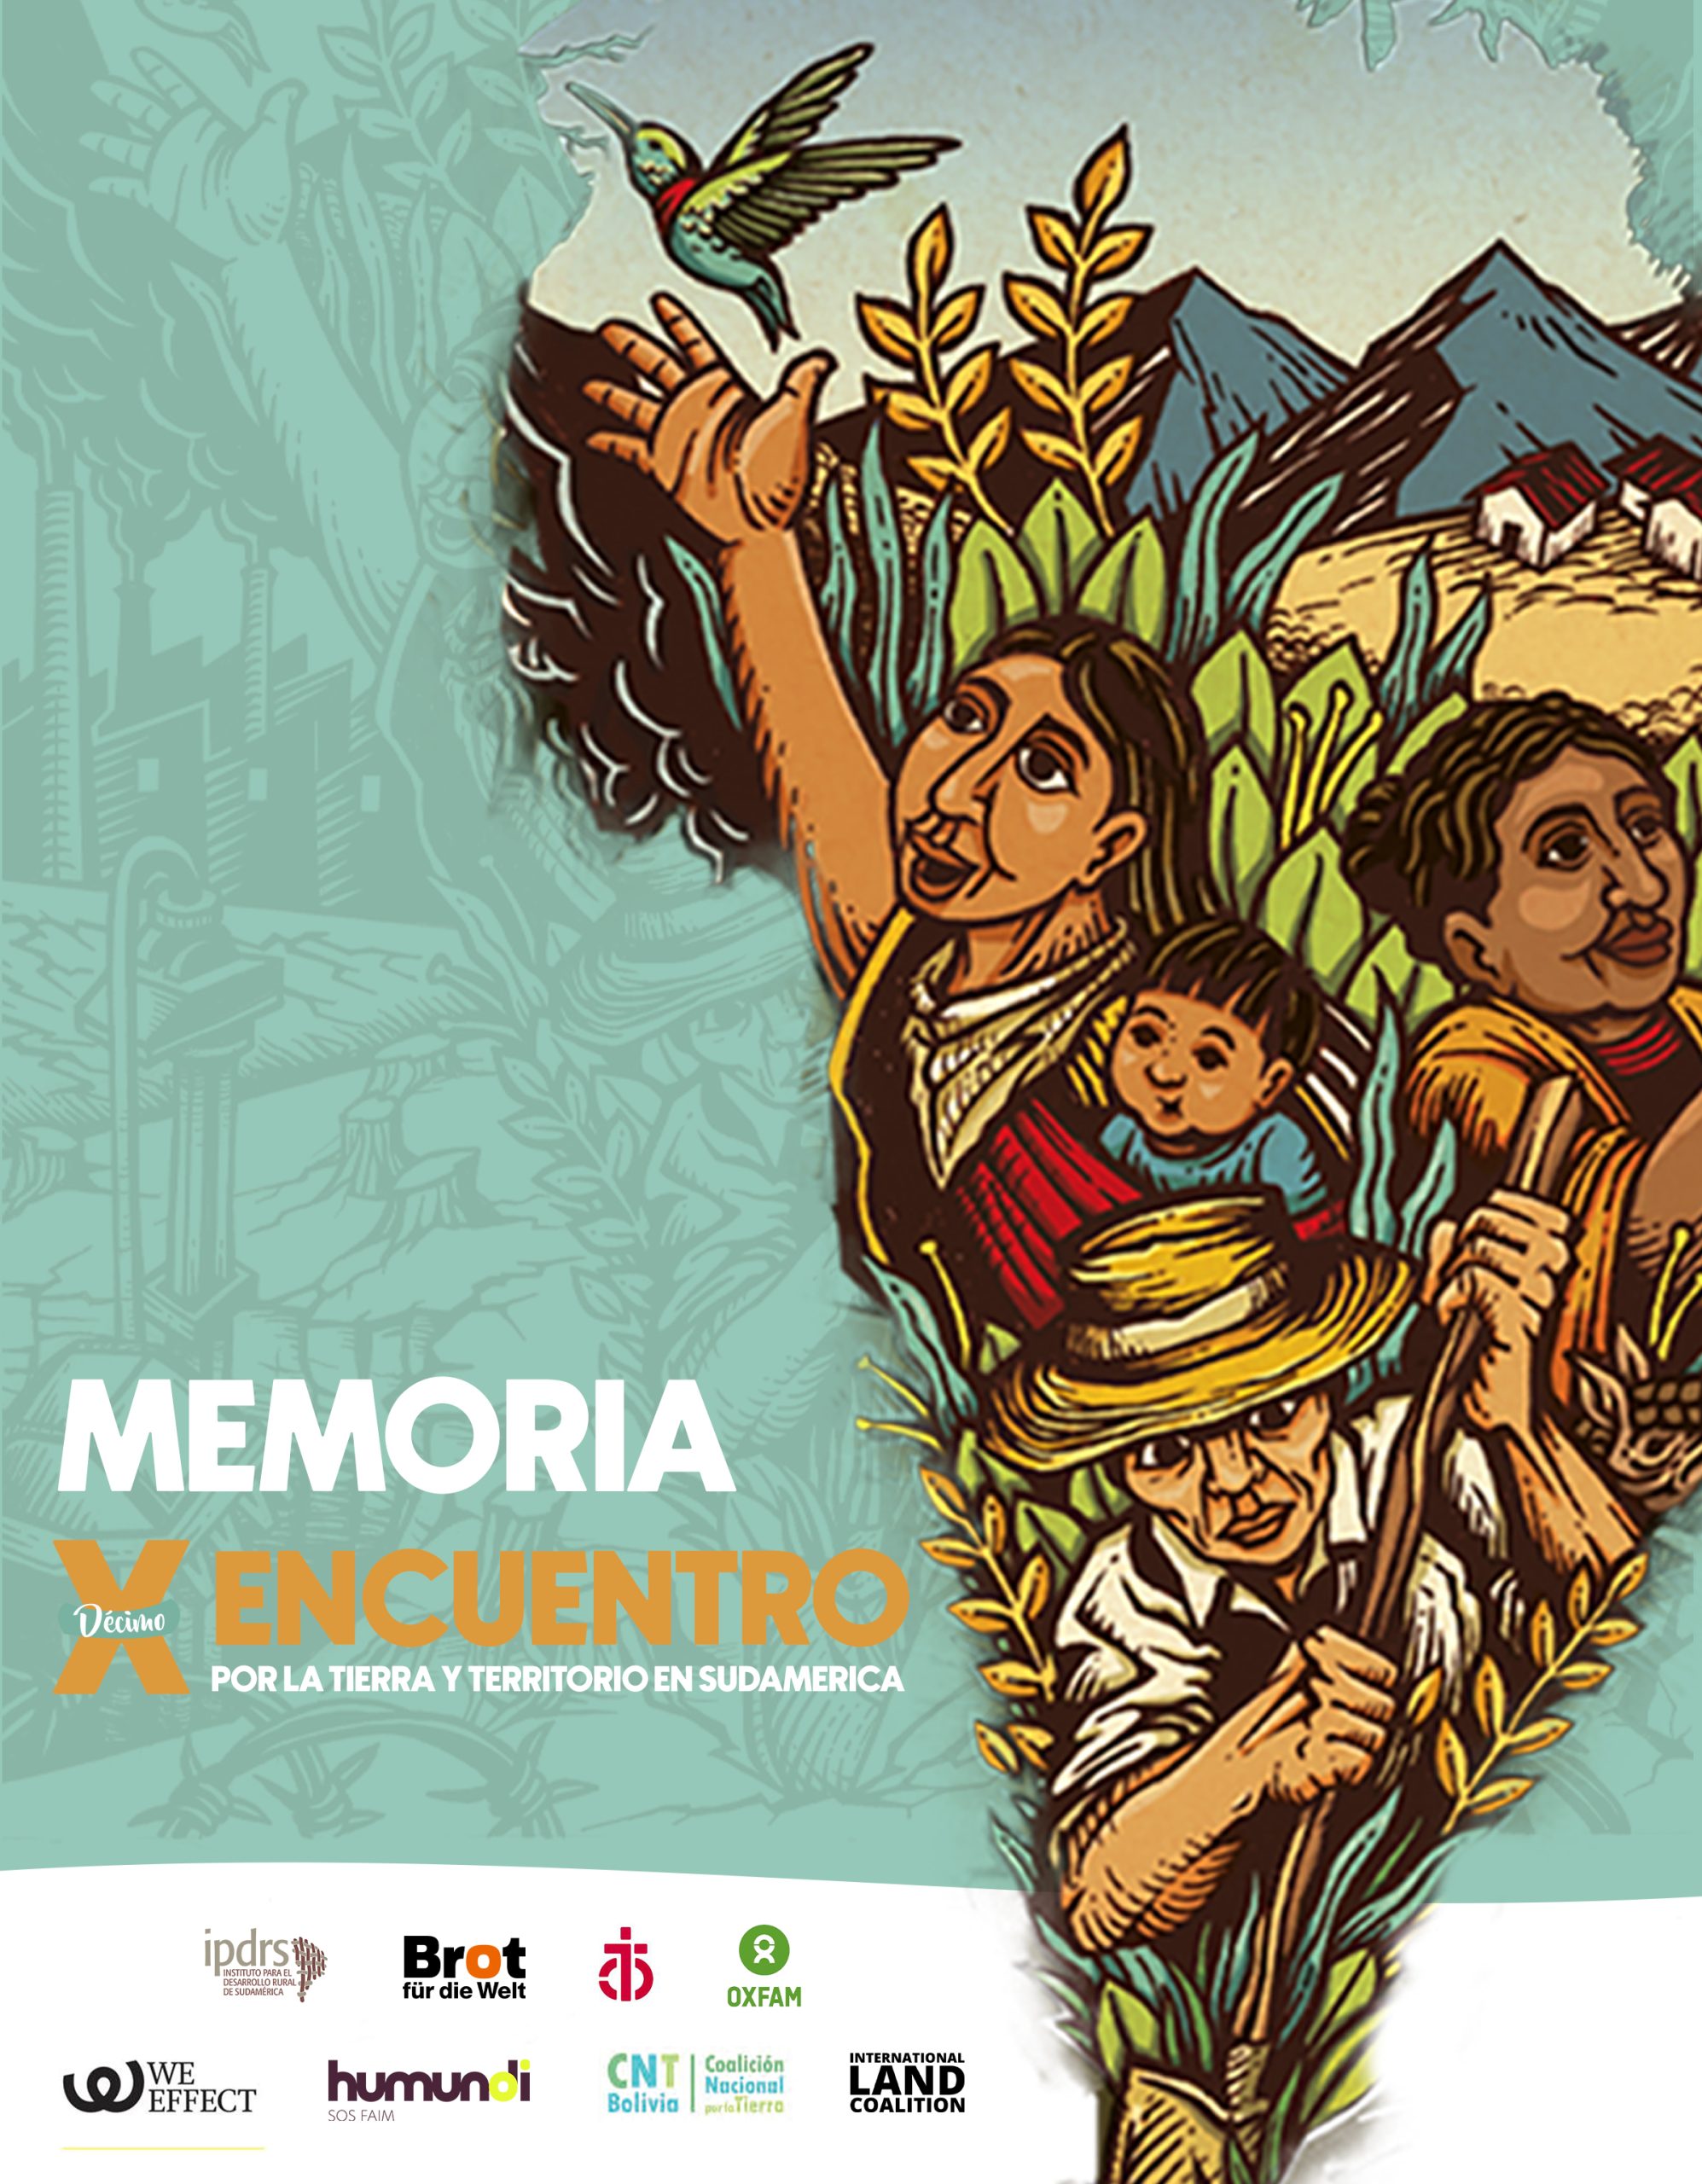 Memoria: Décimo encuentro por la tierra y territorio en Sudamérica